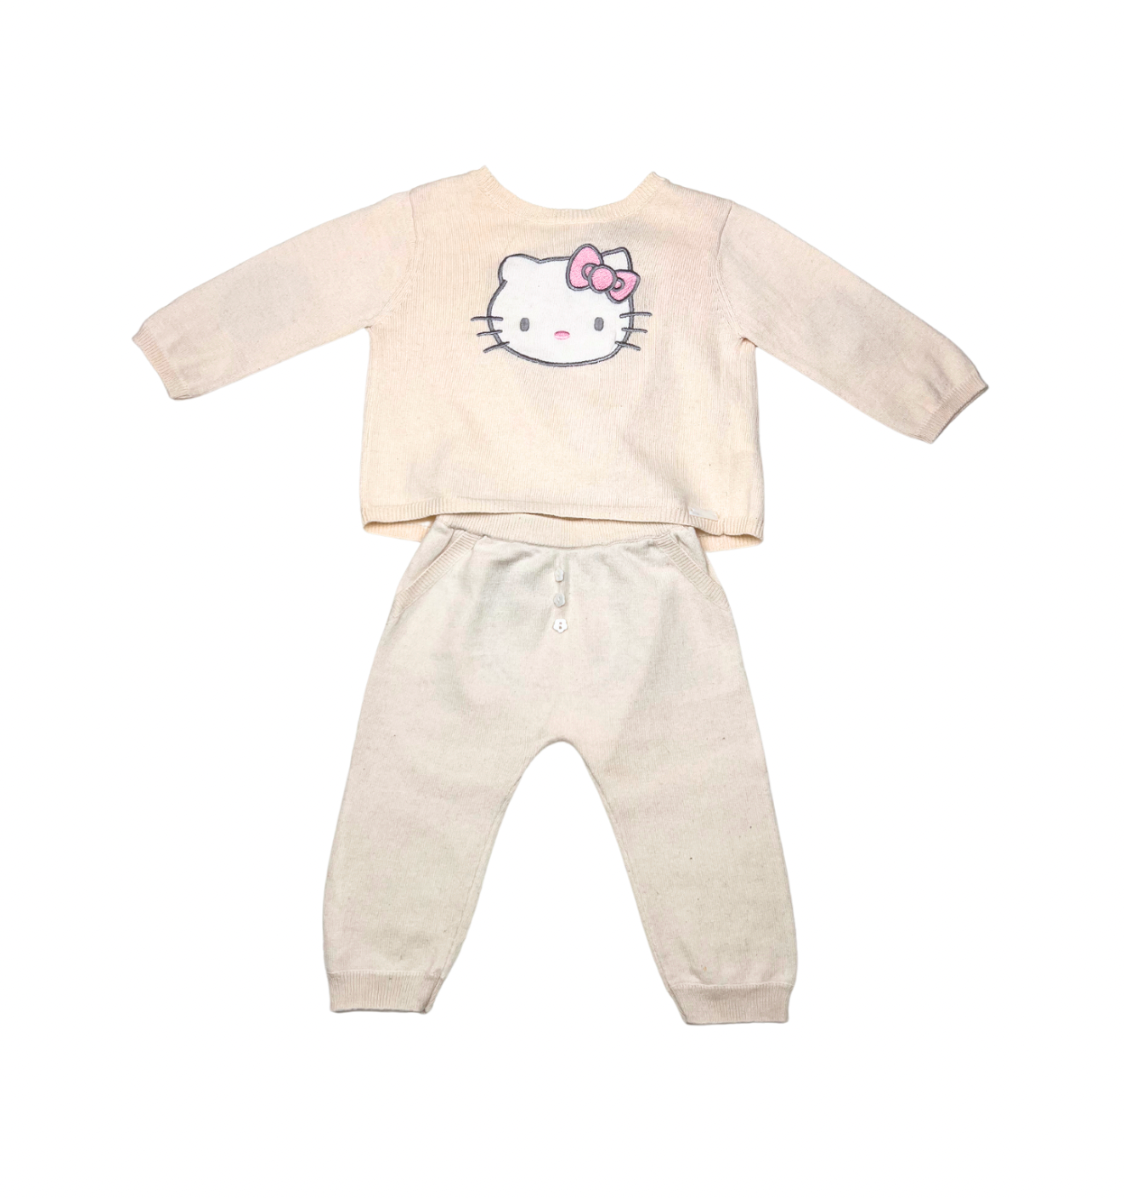 VICTORIA CASAL HELLO KITTY - Pyjama rose - 6 mois